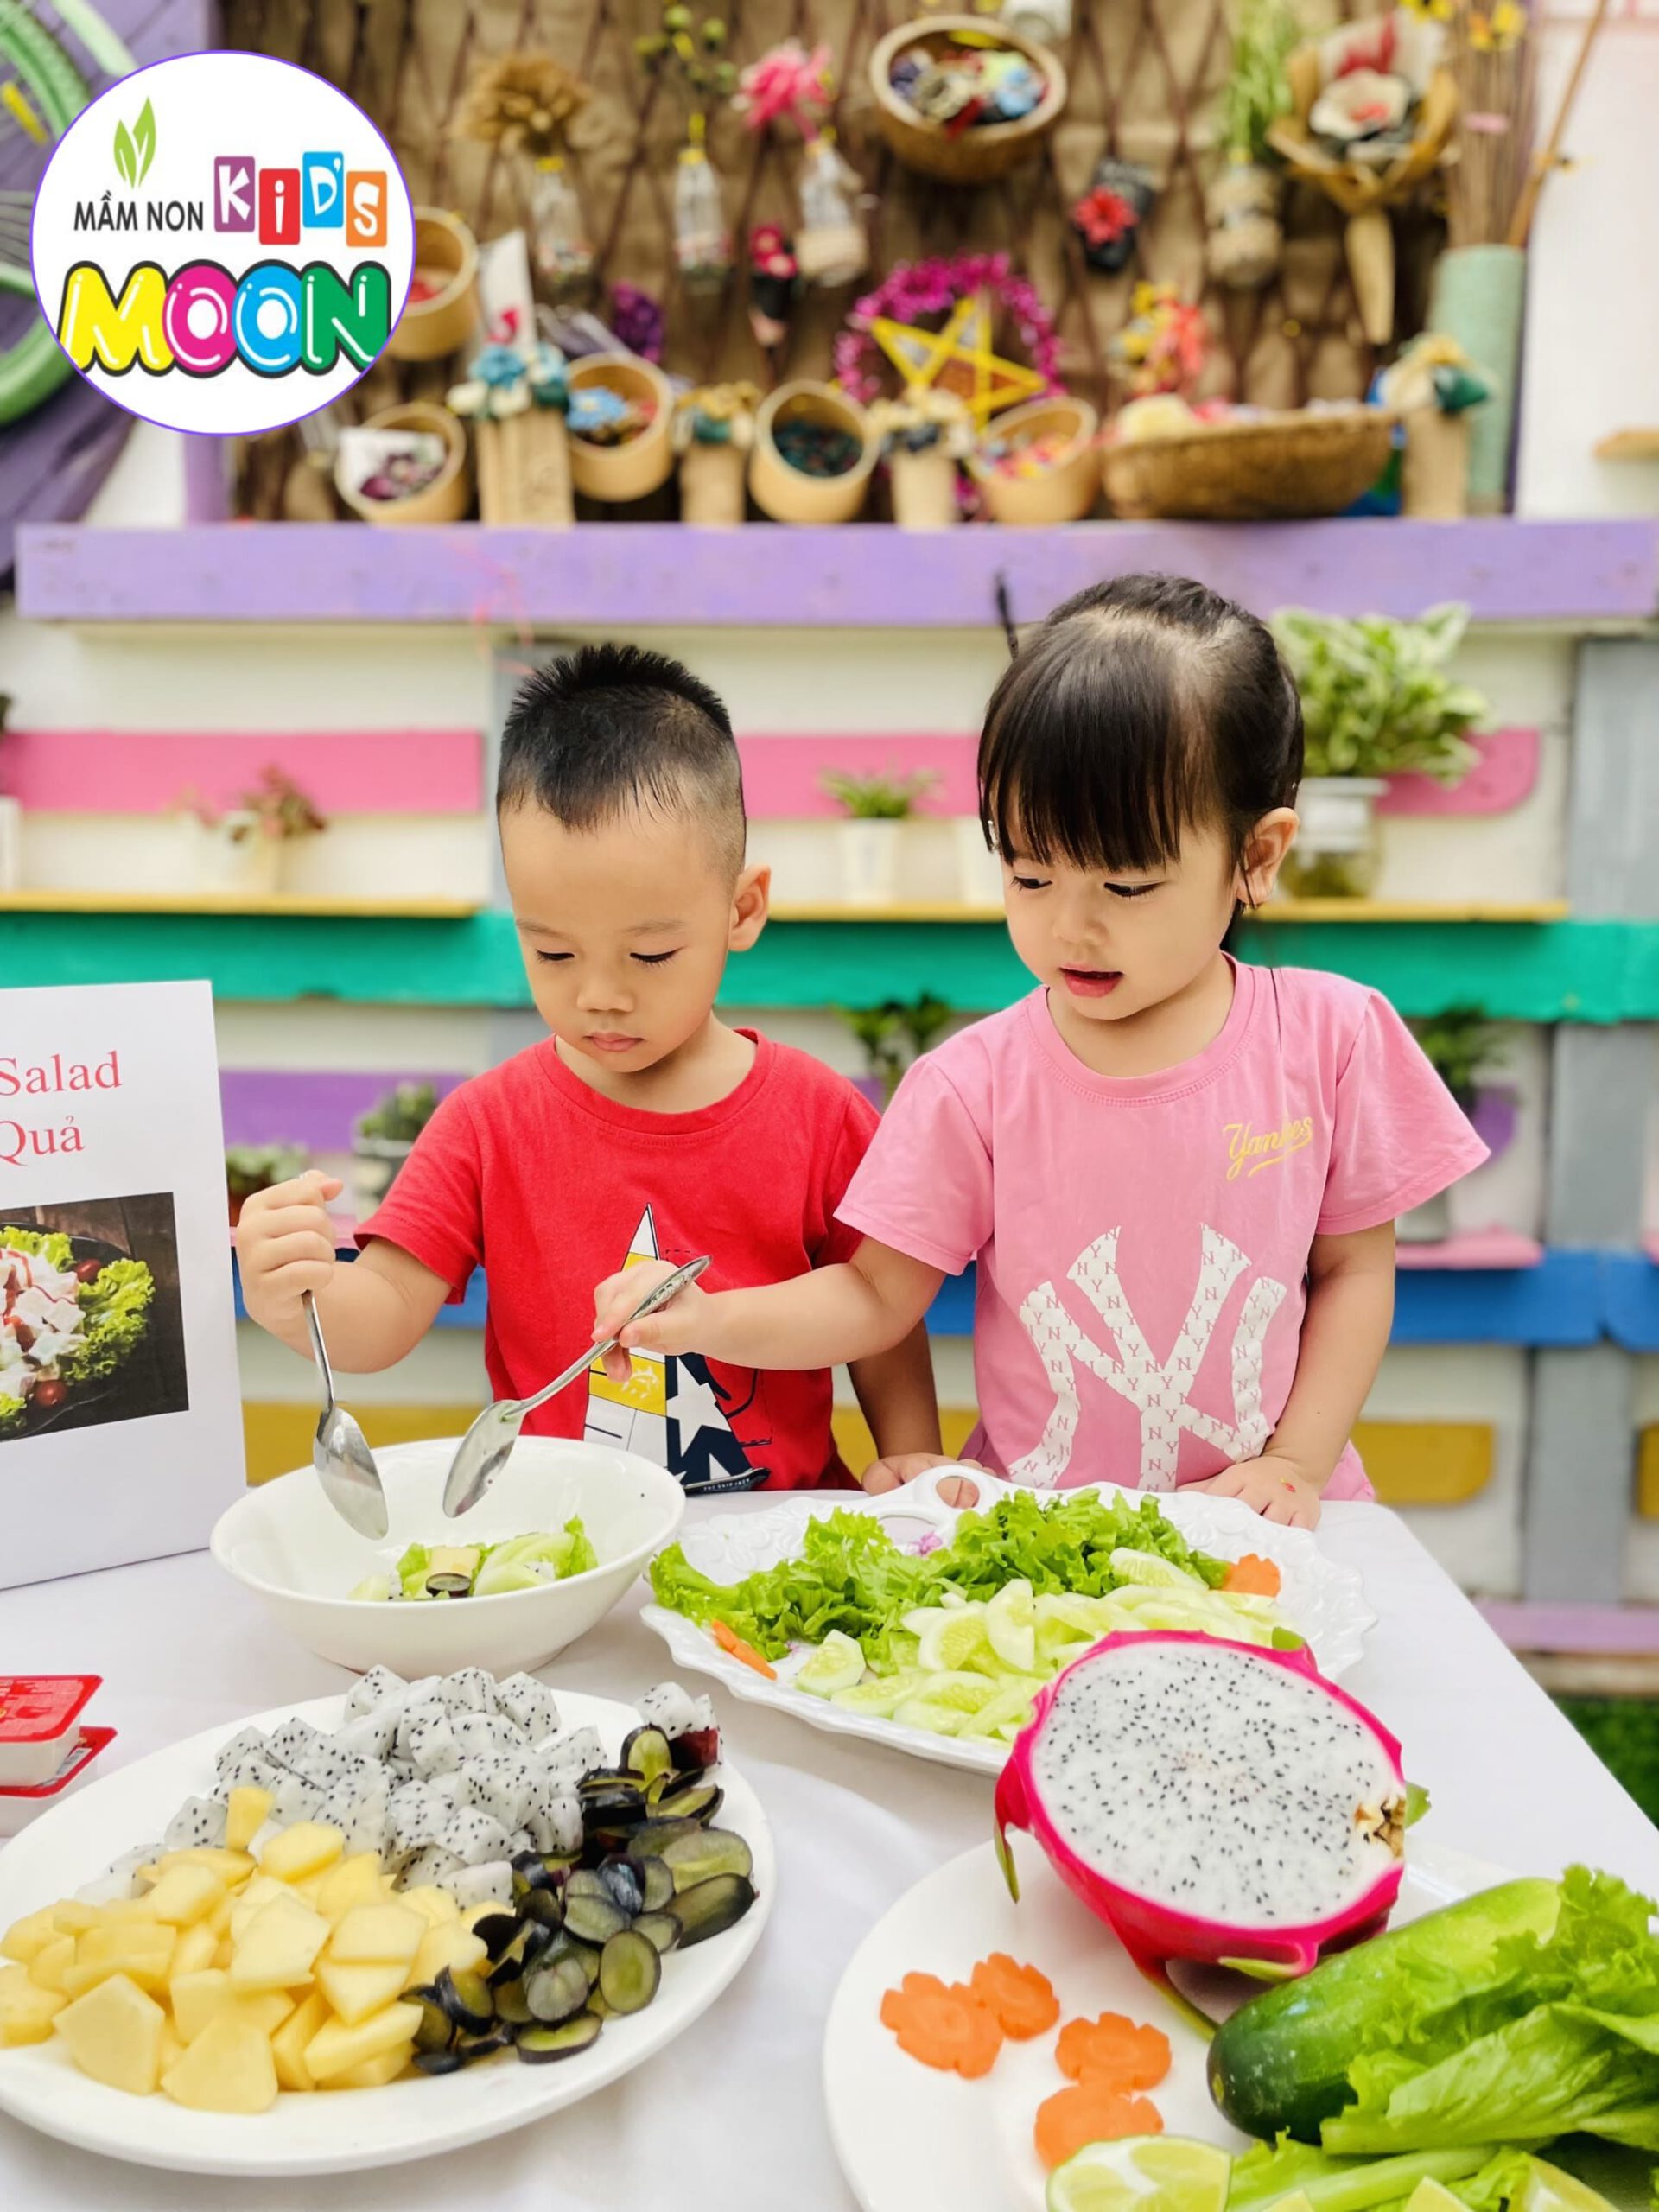 Hoạt Động Trải Nghiệm: Bé Làm Món Salad Hoa Quả - Mầm Non Kid's Moon